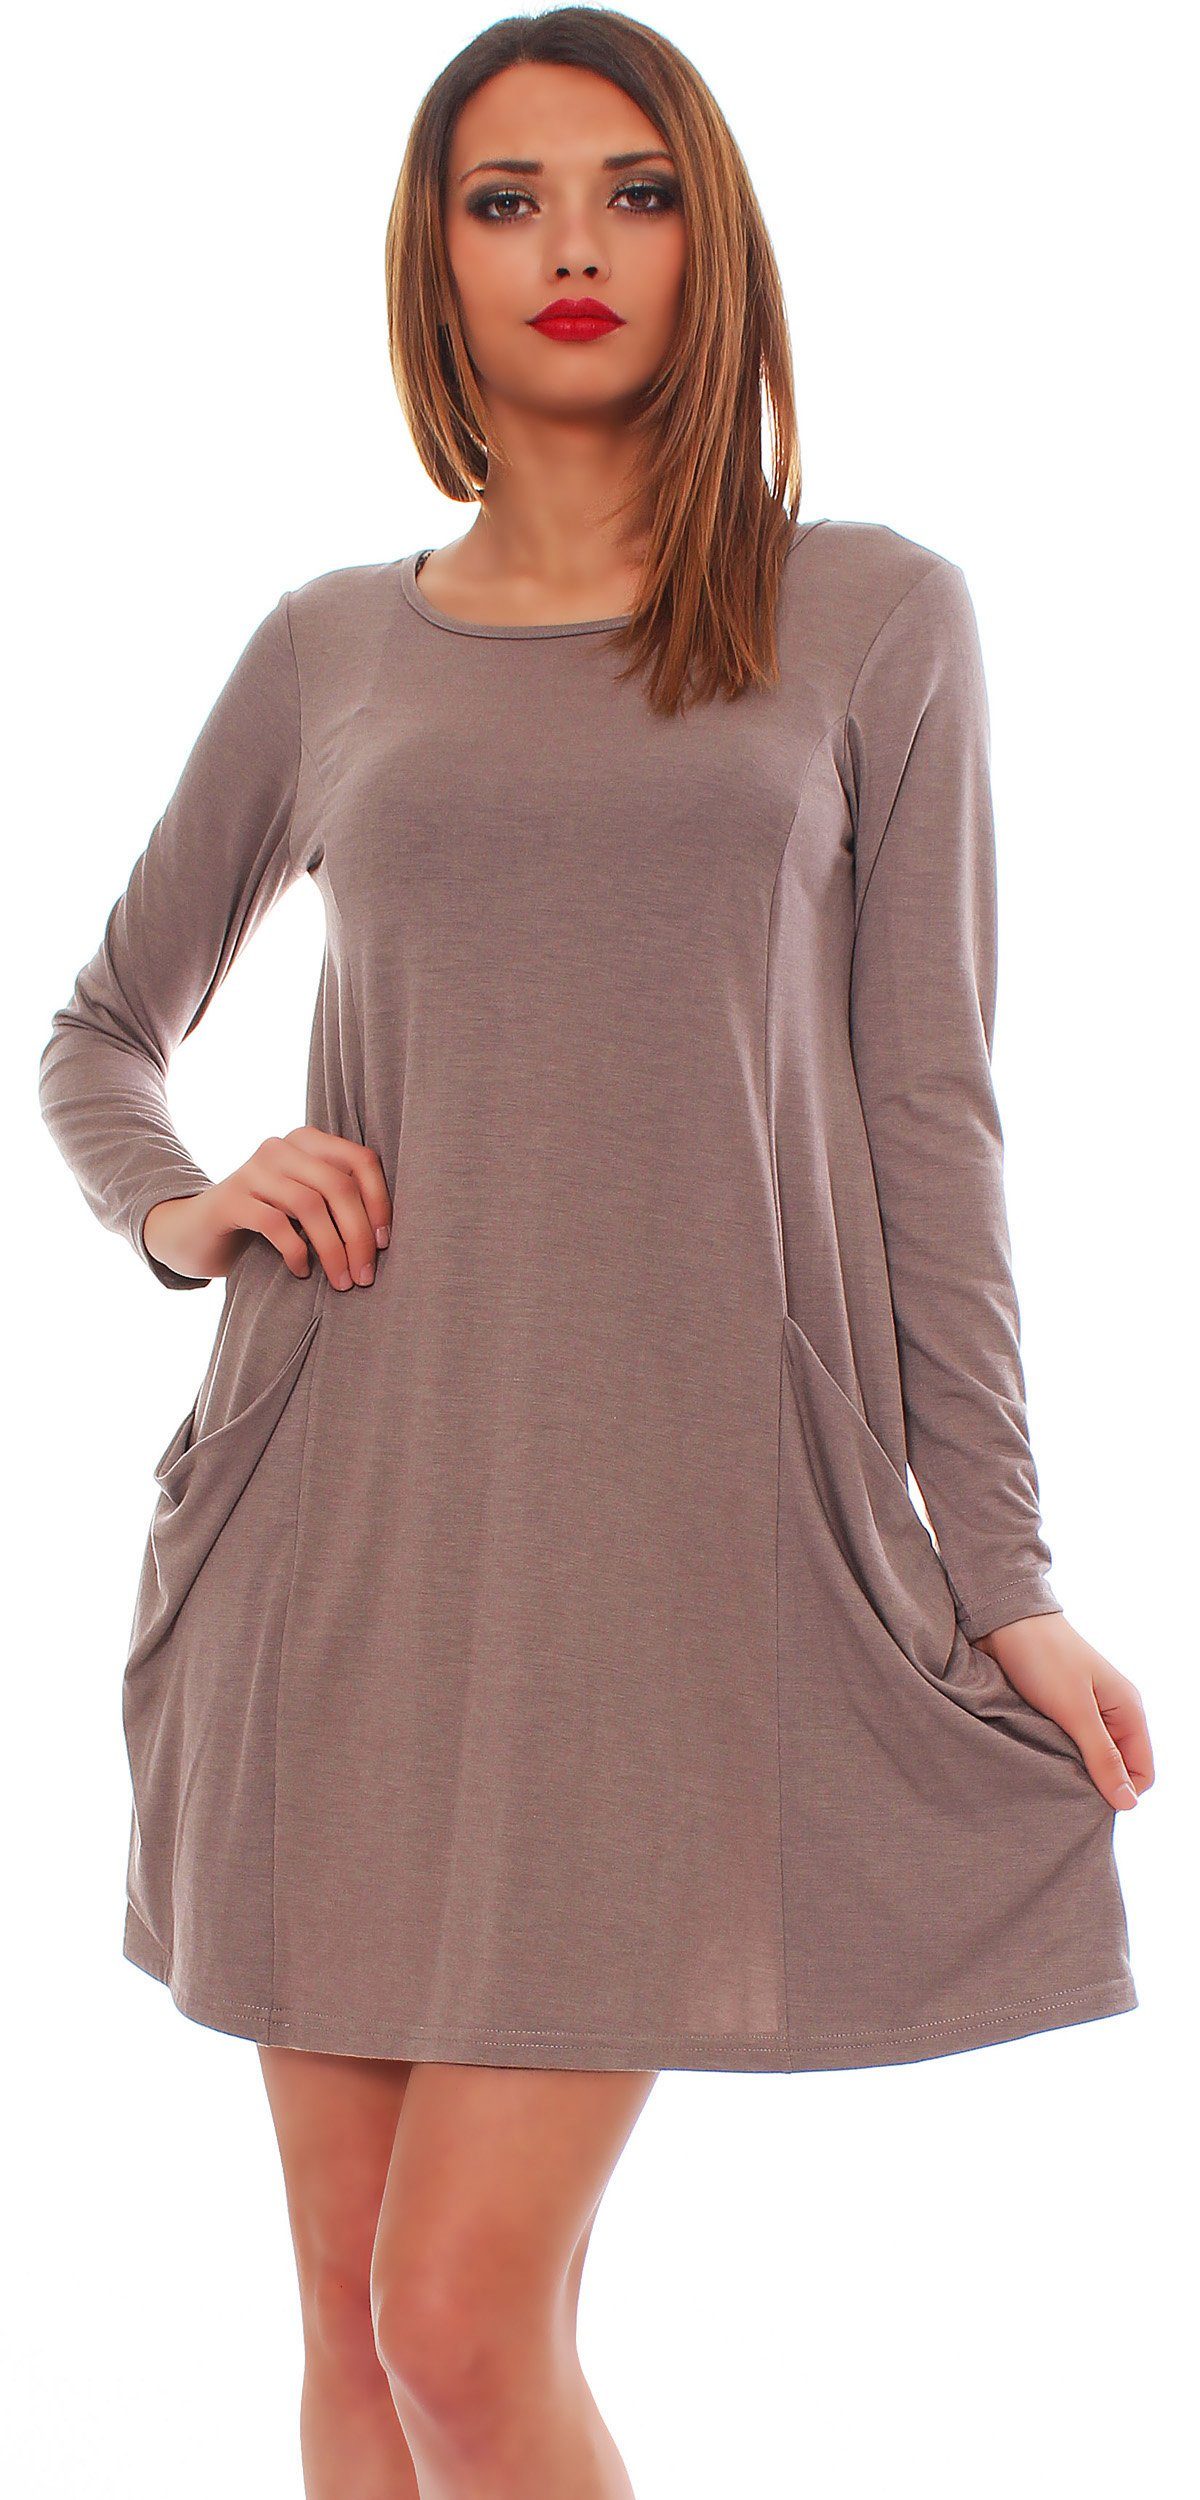 Kleid Tunika Taschen Mississhop A-Linien-Kleid Pulli mit Longshirt Tunika Minikleid Cappuccino_lang 6514